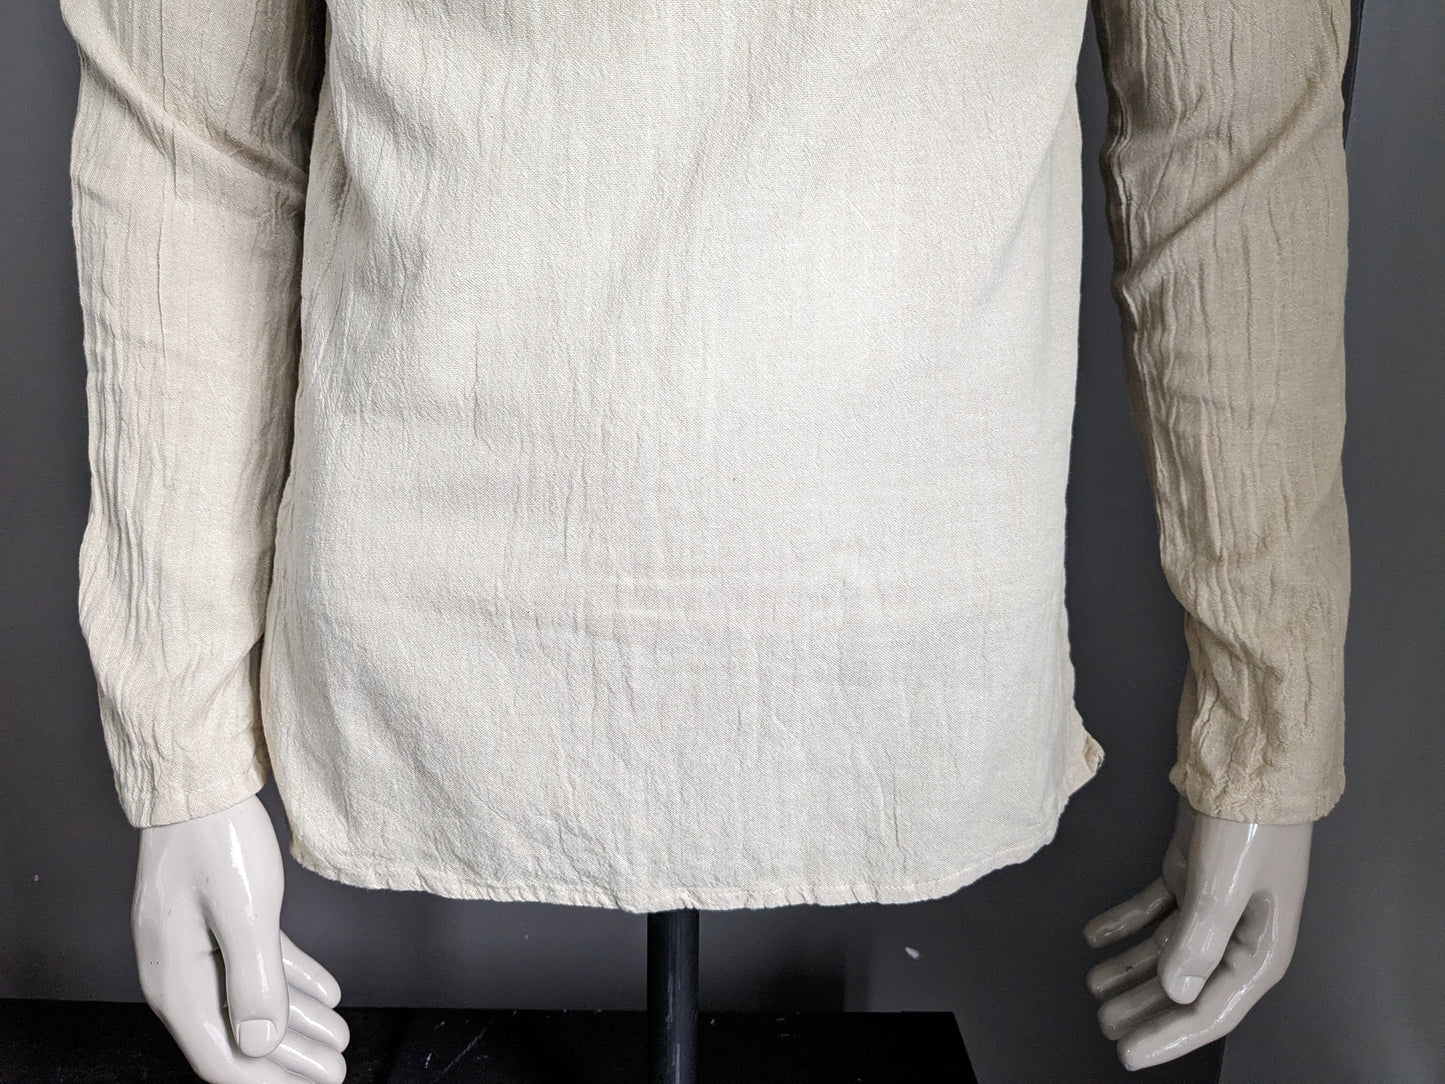 Camicia vintage / manica lunga per maniche lunghe con bottoni e collare Mao / rialzato. Marrone chiaro. Taglia M.